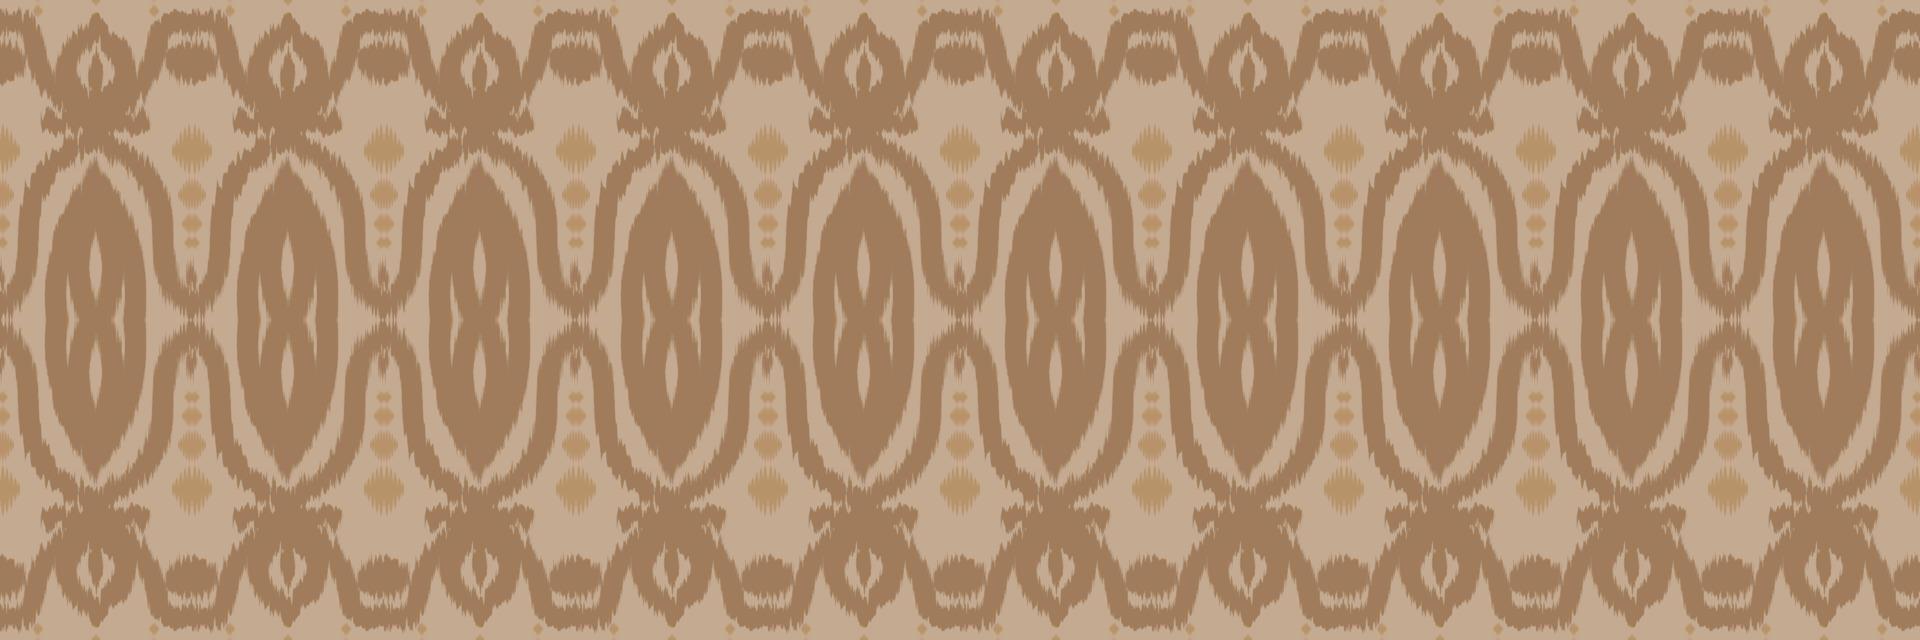 etnisch ikat vector batik textiel naadloos patroon digitaal vector ontwerp voor afdrukken Saree kurti Borneo kleding stof grens borstel symbolen stalen katoen